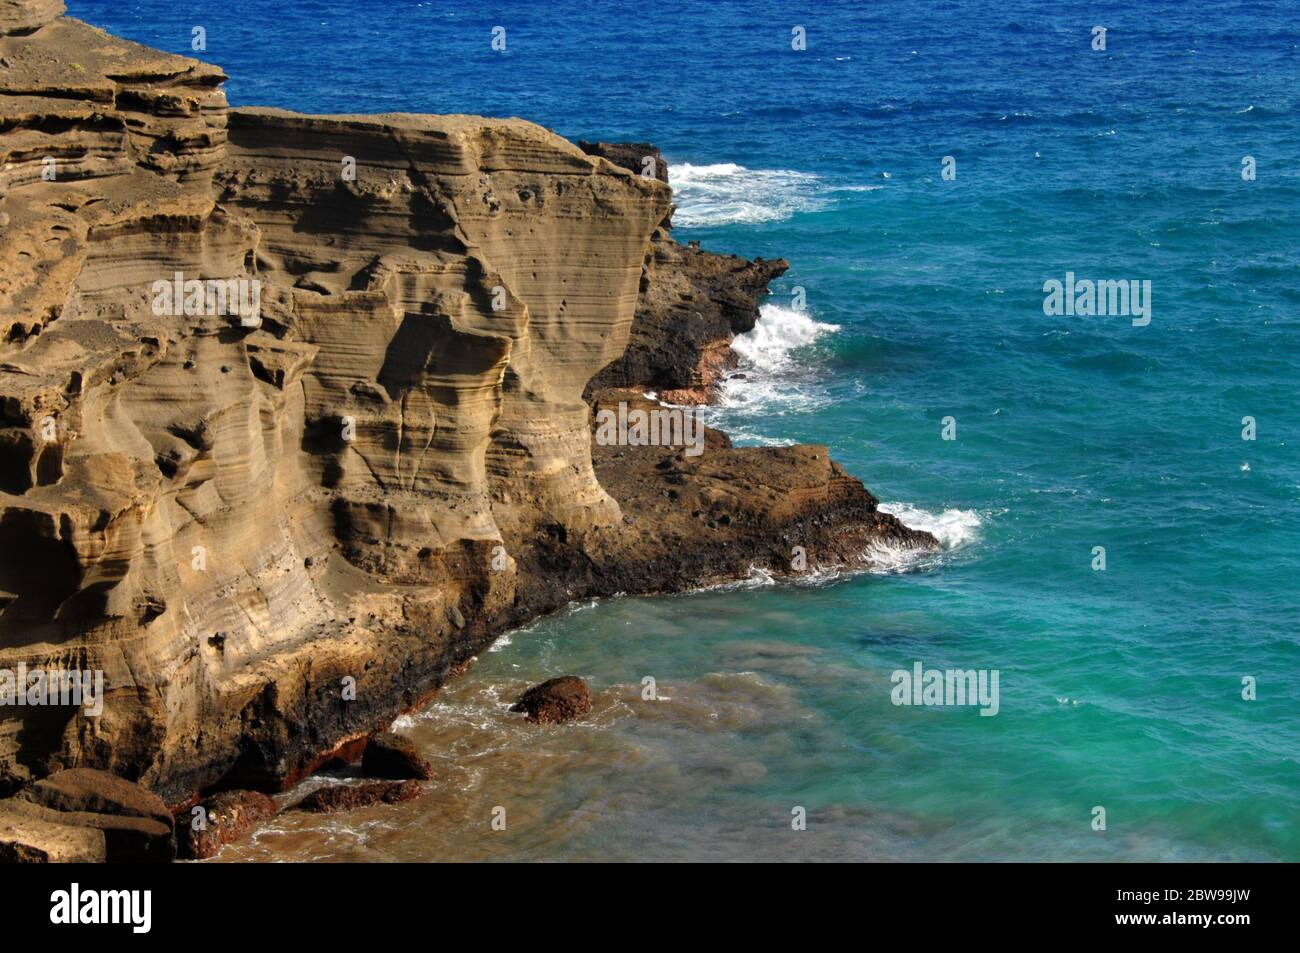 Klippe Seite des Green Sand Beach, Big Island von Hawaii, Wind und Wellen Erosion ist in der Sandstein Felswand zu sehen. Aqua blaues Wasser und Wellen surro Stockfoto